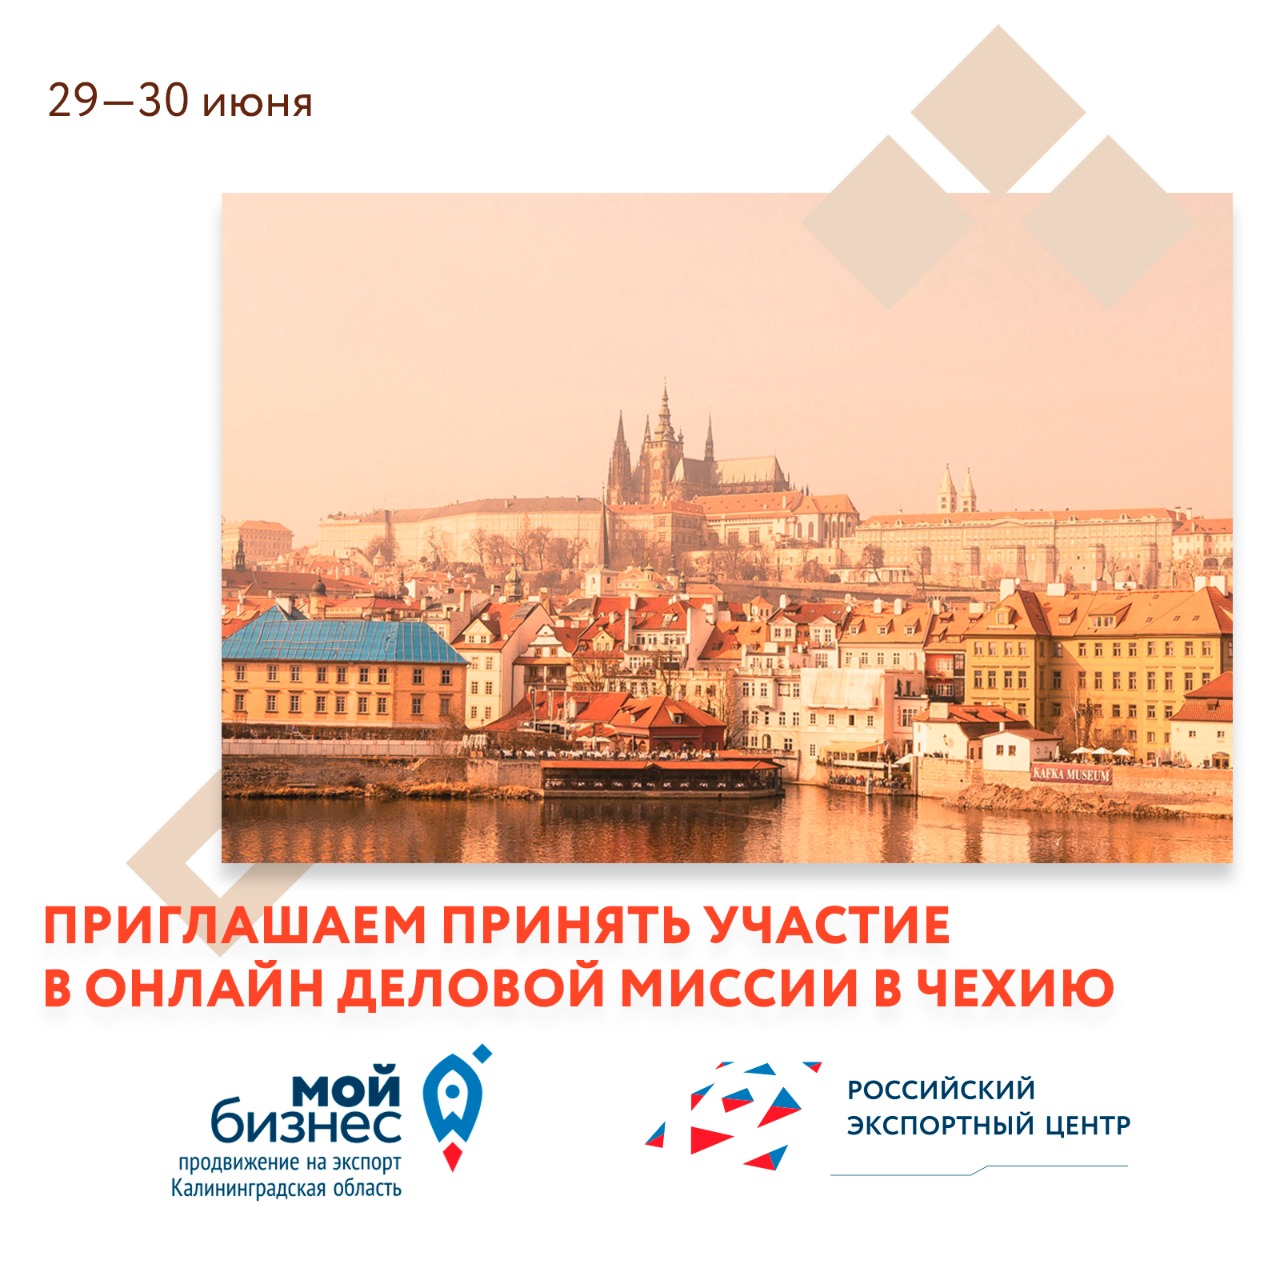 Онлайн деловая миссия в Чехию для экспортеров